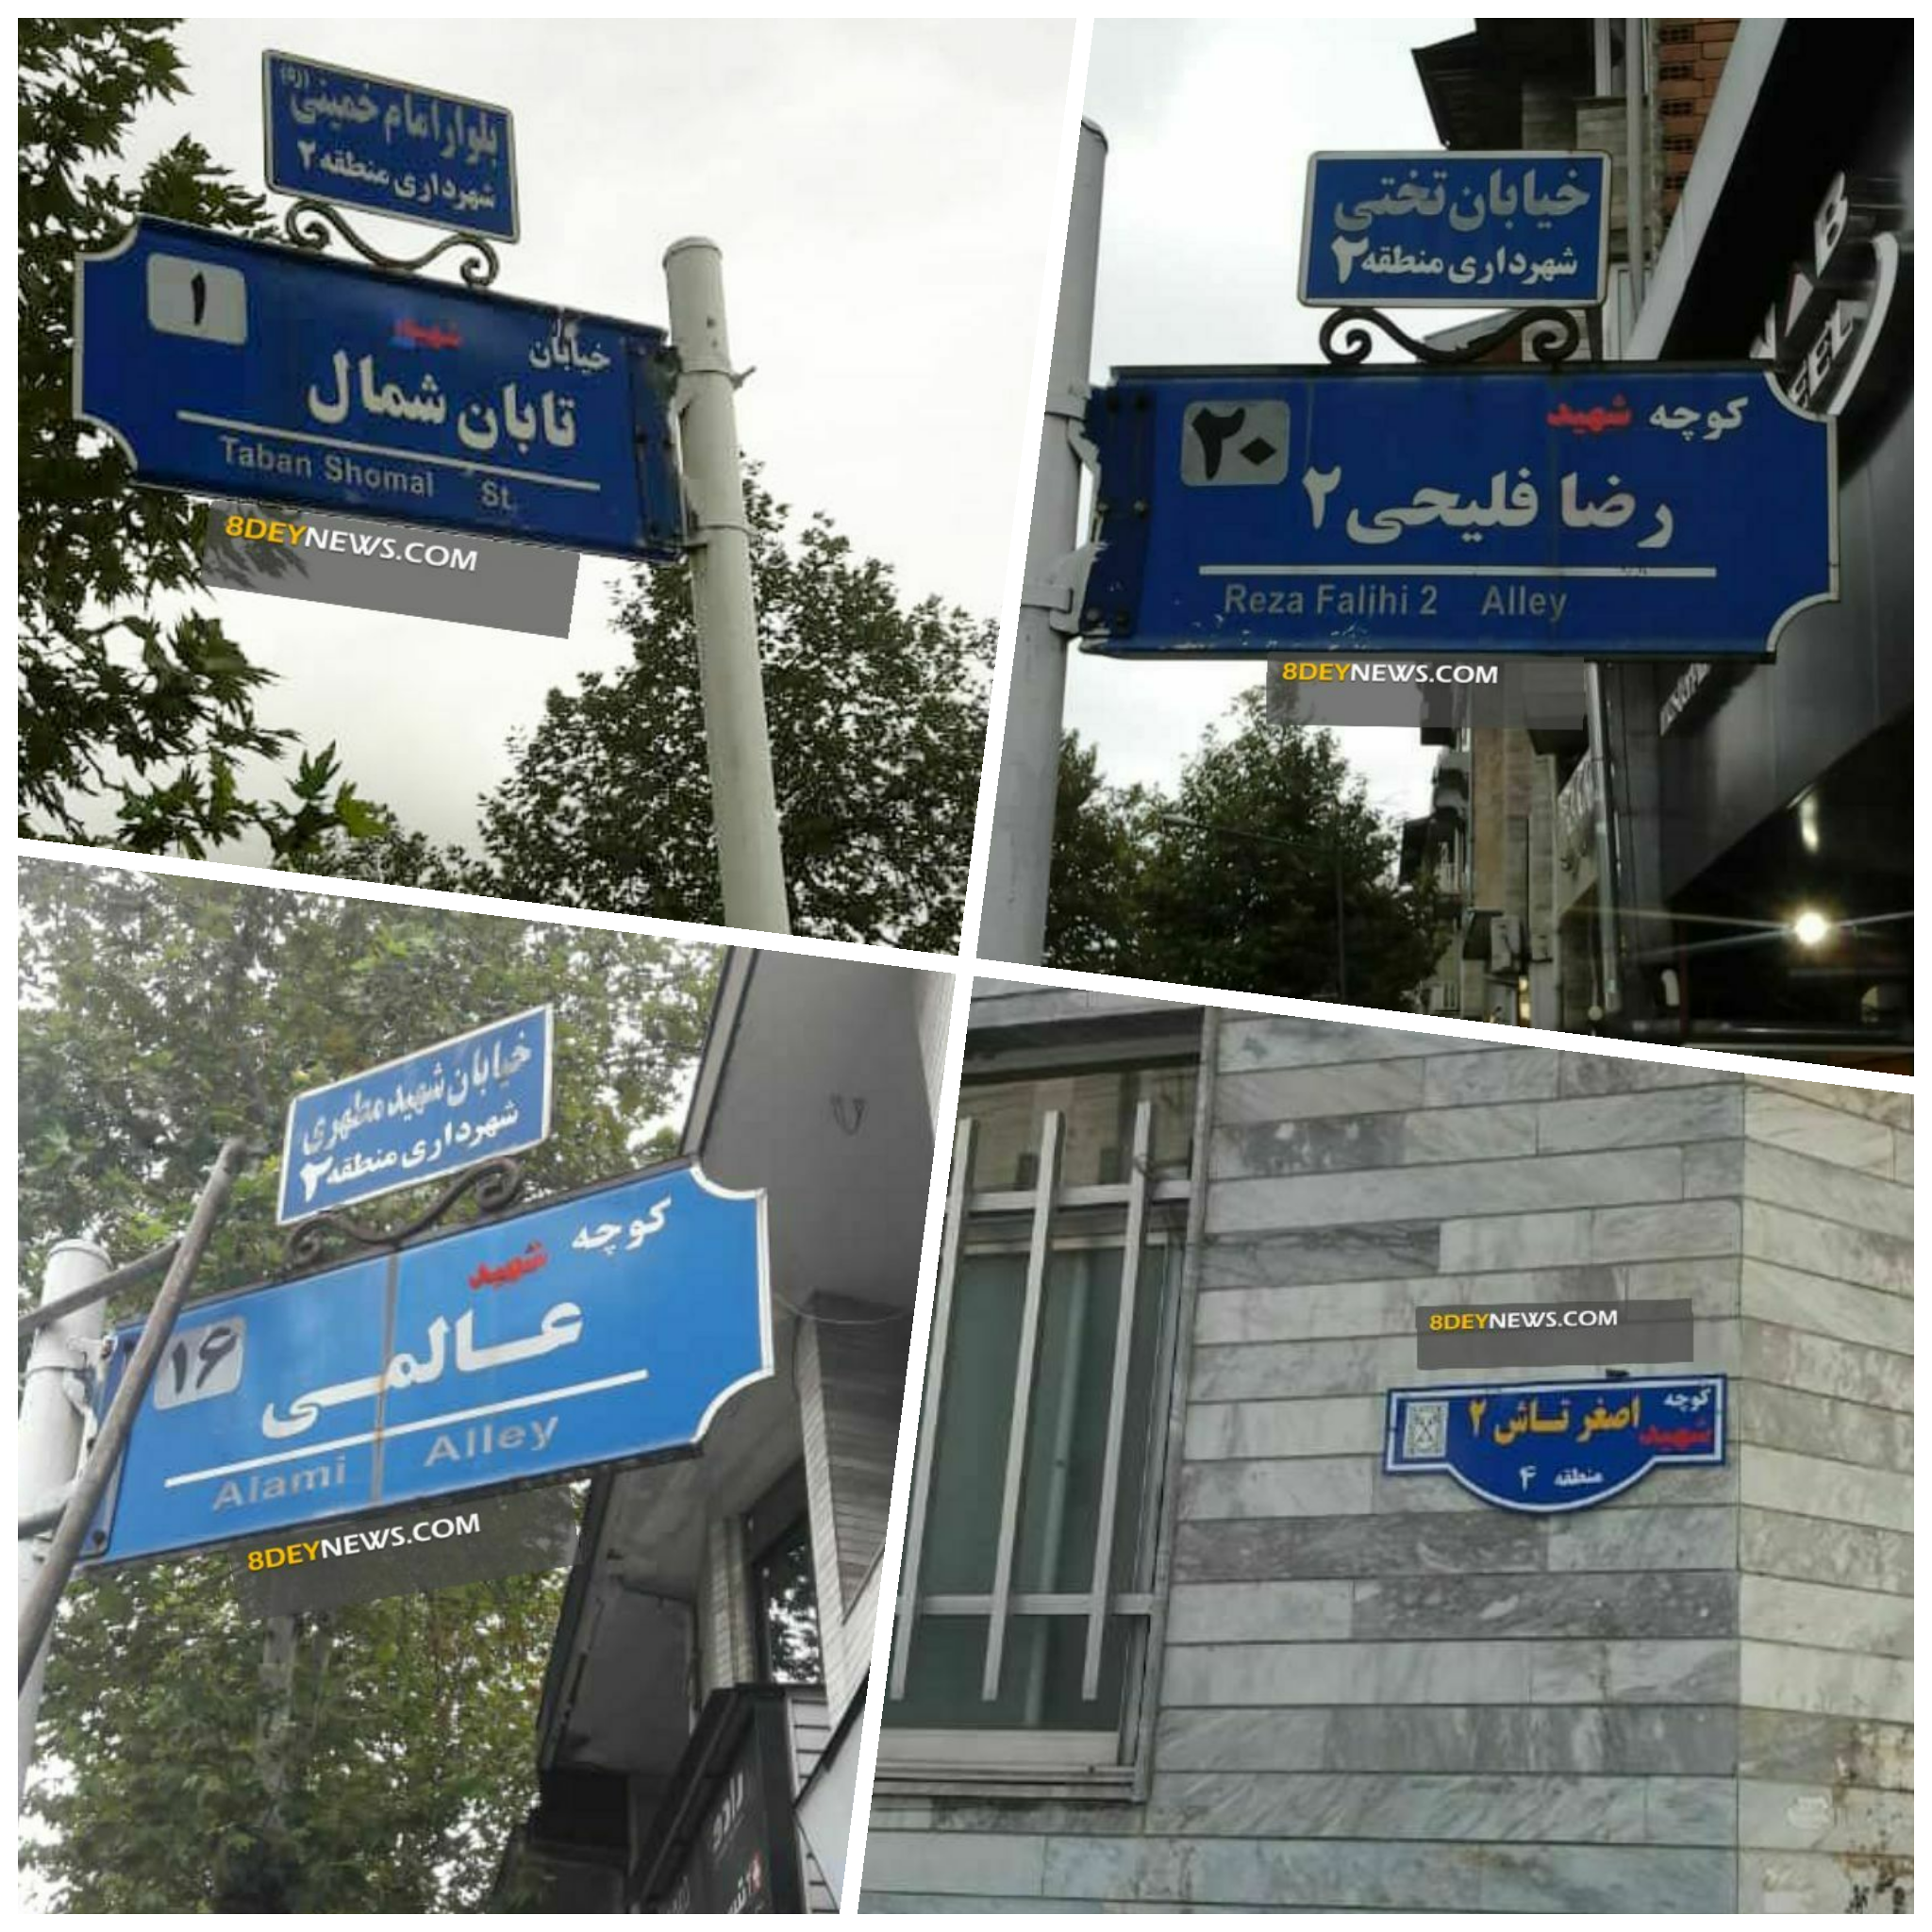 تابلوهای هم نام شهدا در معابر و خیابان های شهر رشت اصلاح شد + تصاویر